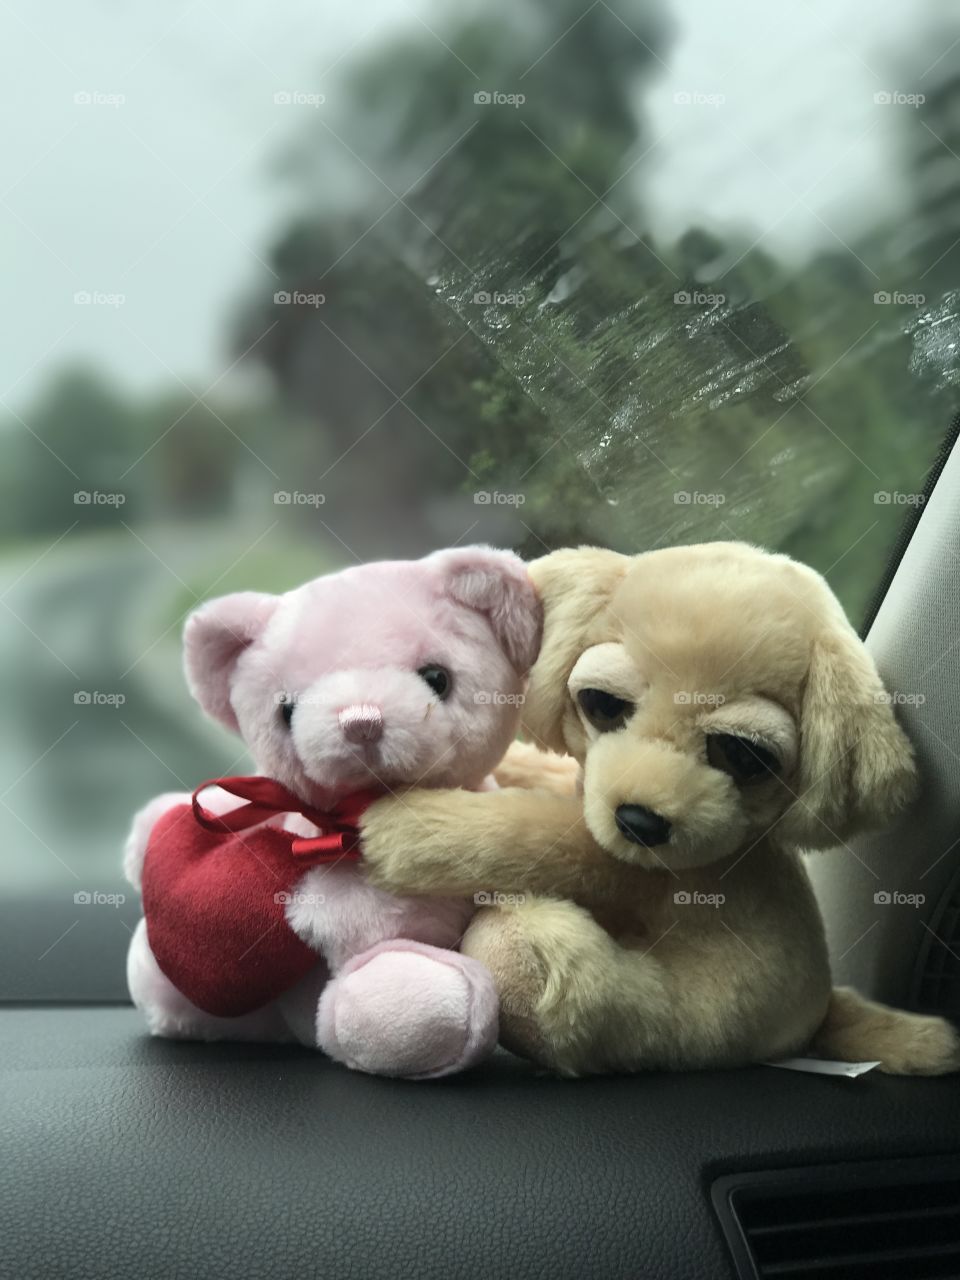 Teddy bears Hugging on a car dashboard 